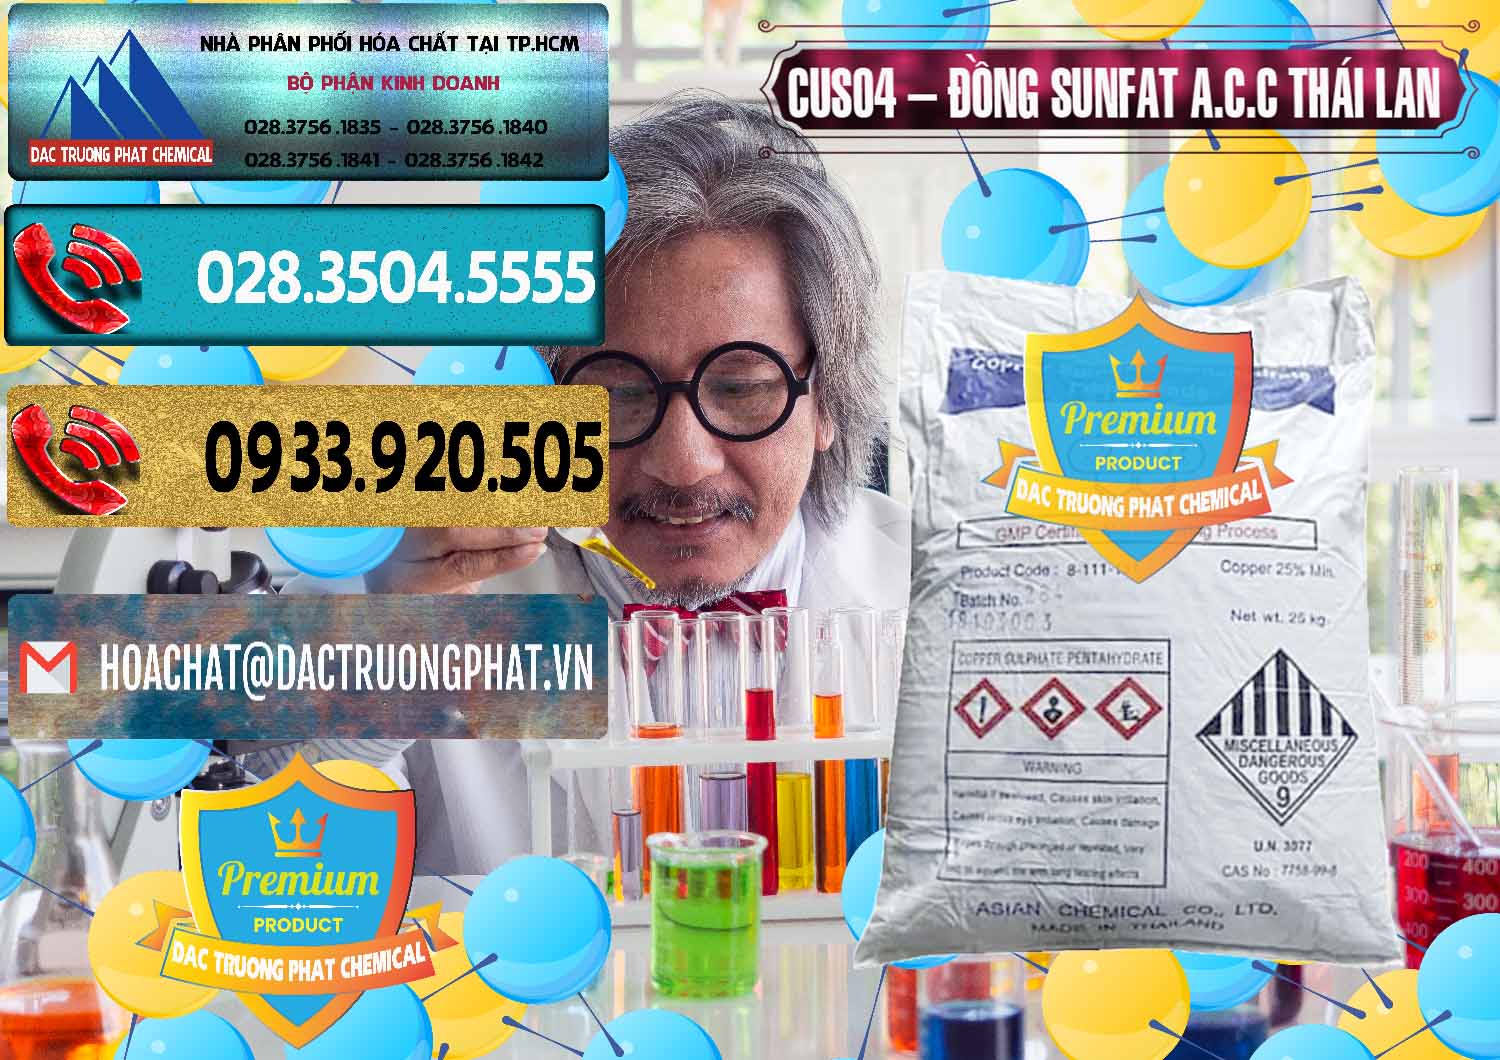 Cty chuyên bán & cung cấp CuSO4 – Đồng Sunfat A.C.C Thái Lan - 0249 - Công ty phân phối & cung ứng hóa chất tại TP.HCM - hoachatdetnhuom.com